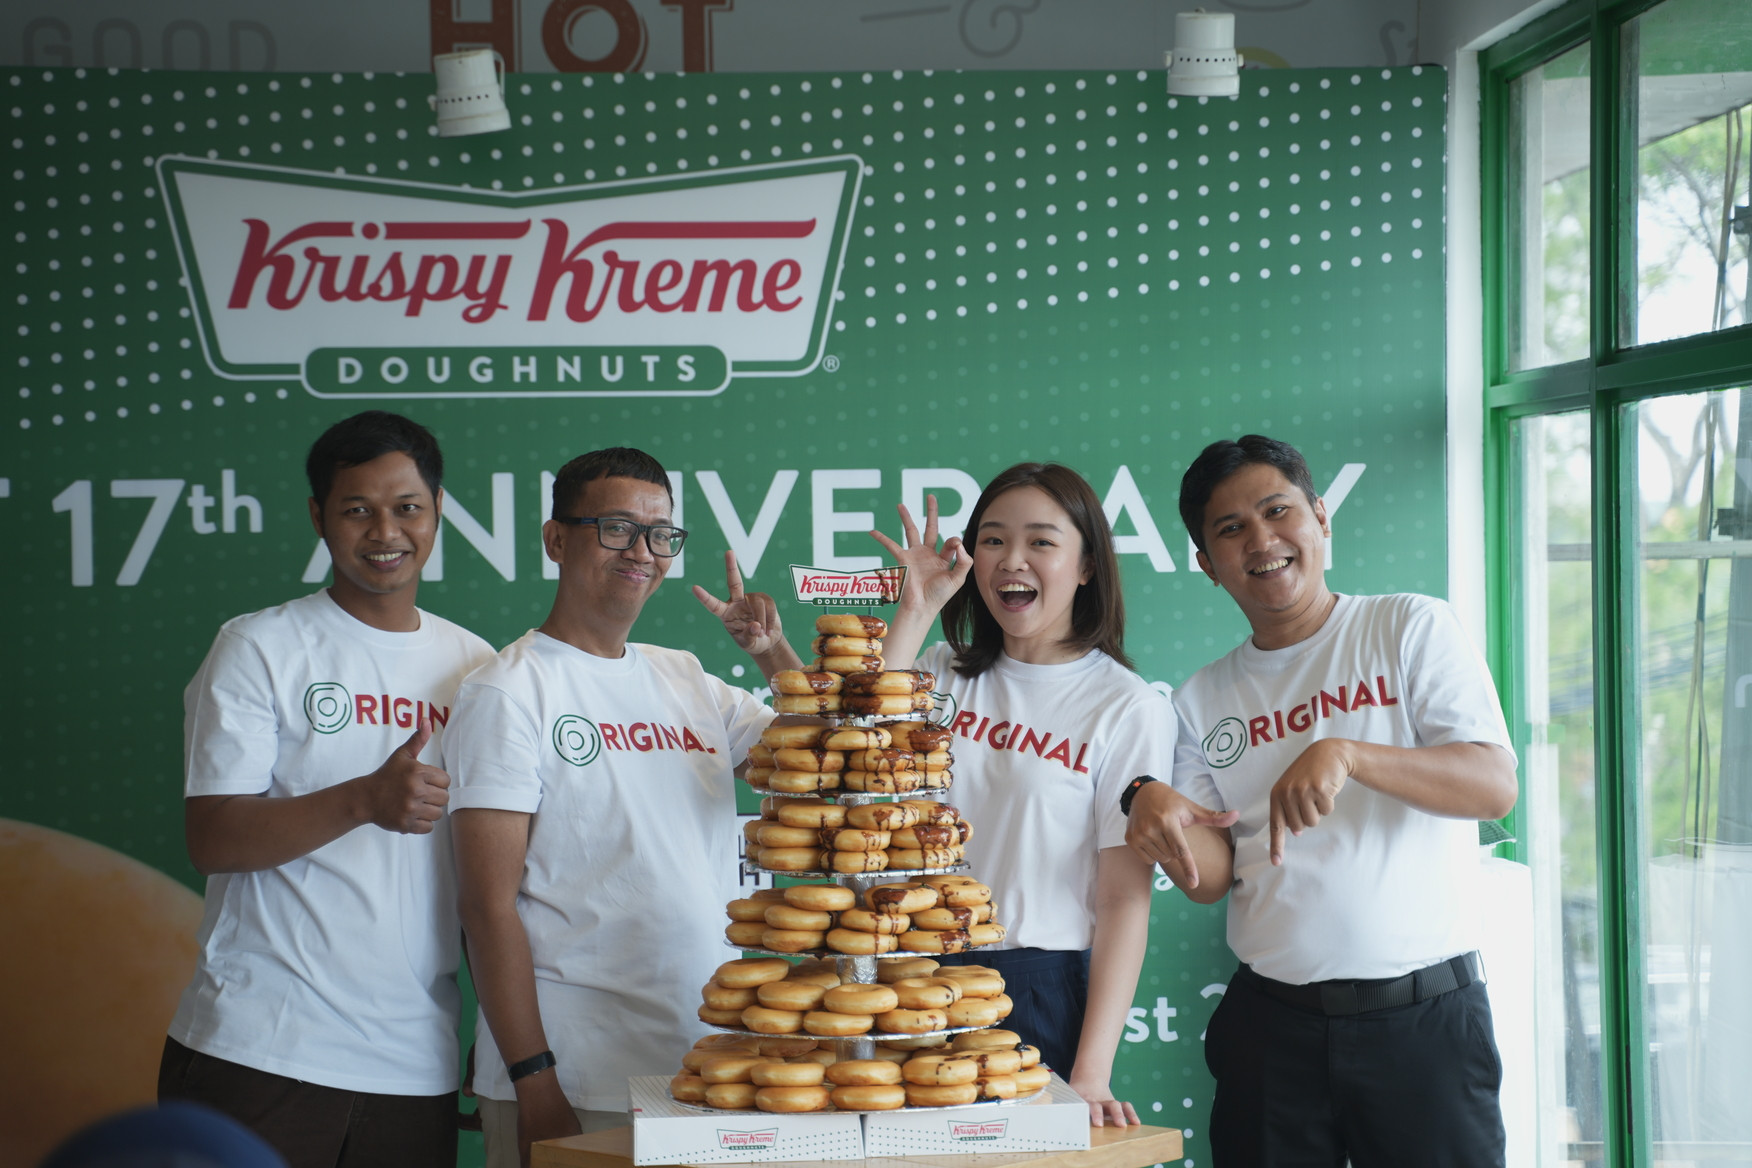 Genap 17 Tahun, Krispy Kreme Gandeng New Era Hadirkan Merchandise Spesial!